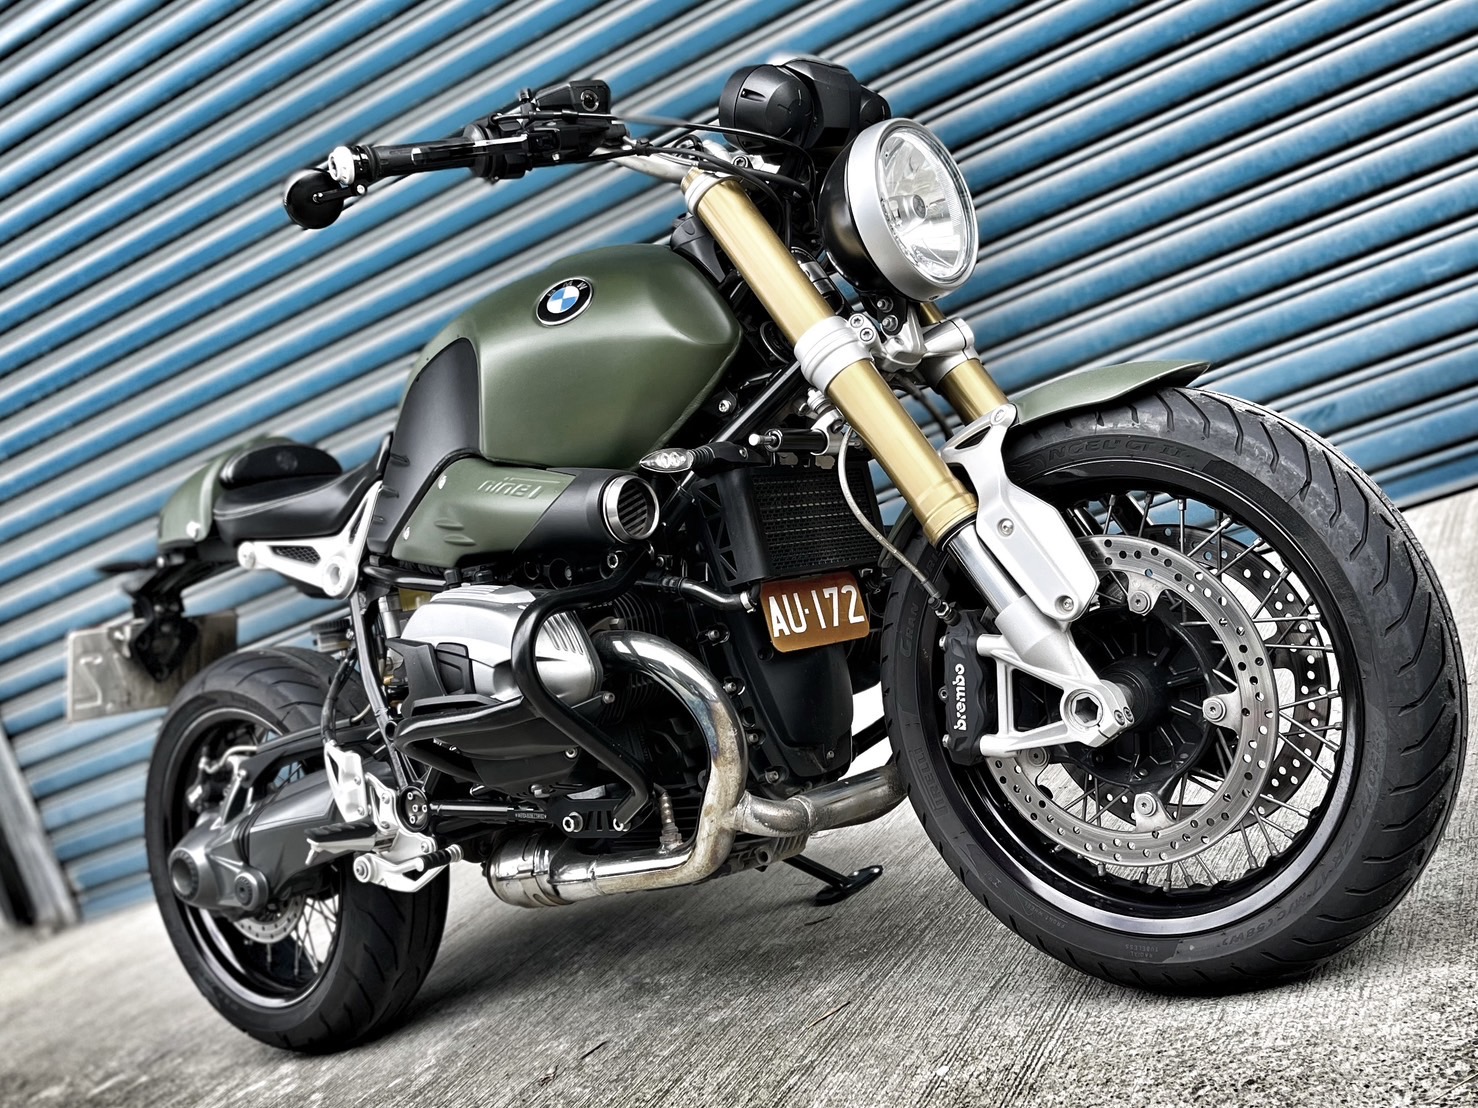 【小資族二手重機買賣】BMW R nineT - 「Webike-摩托車市」 視覺改裝 無摔車無事故 小資族二手重機買賣